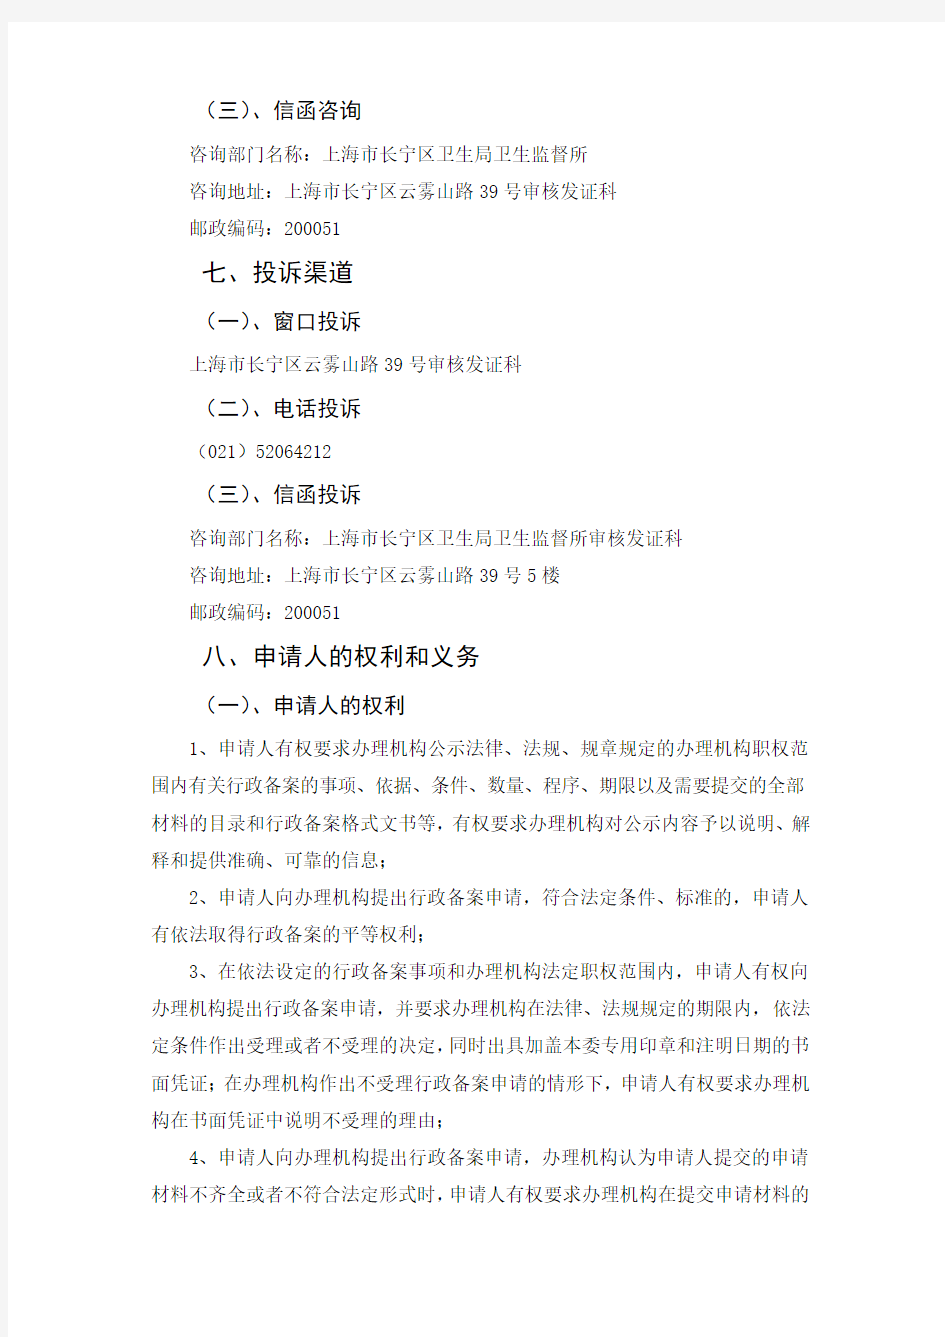 上海市实验室备案审批办事指南